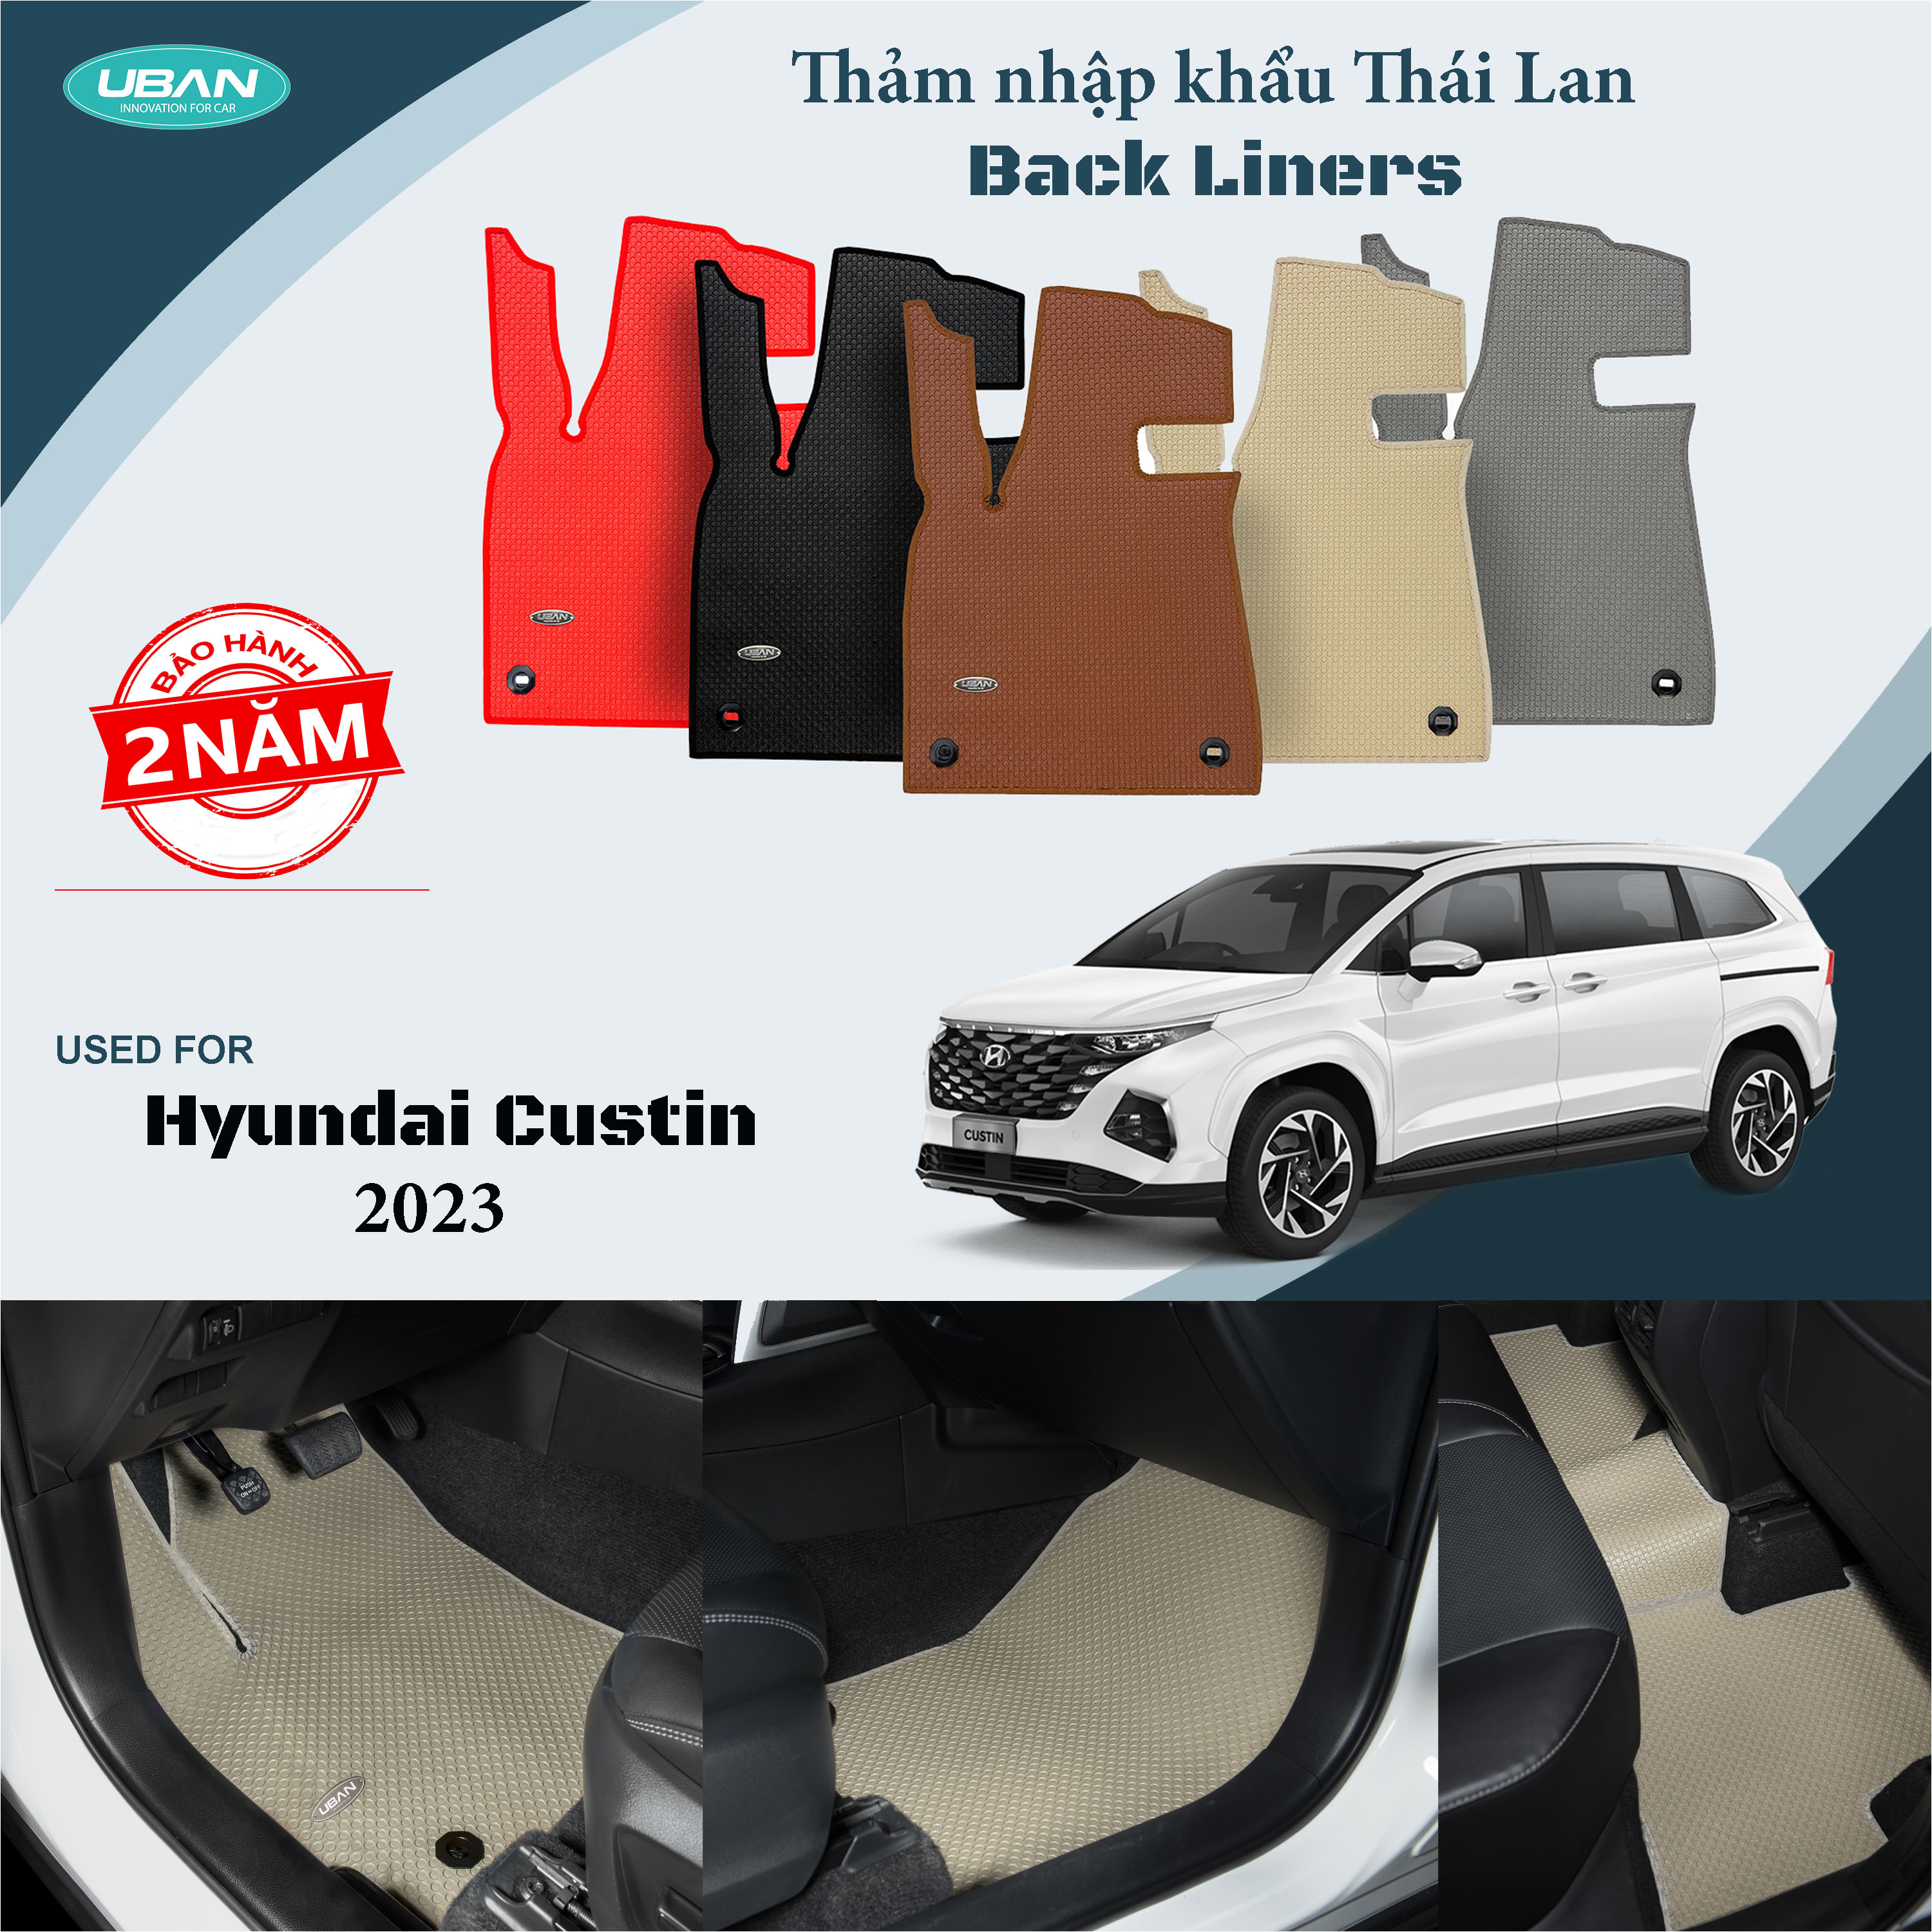 Thảm lót sàn ô tô UBAN cho xe Hyundai Custin - Nhập khẩu Thái Lan